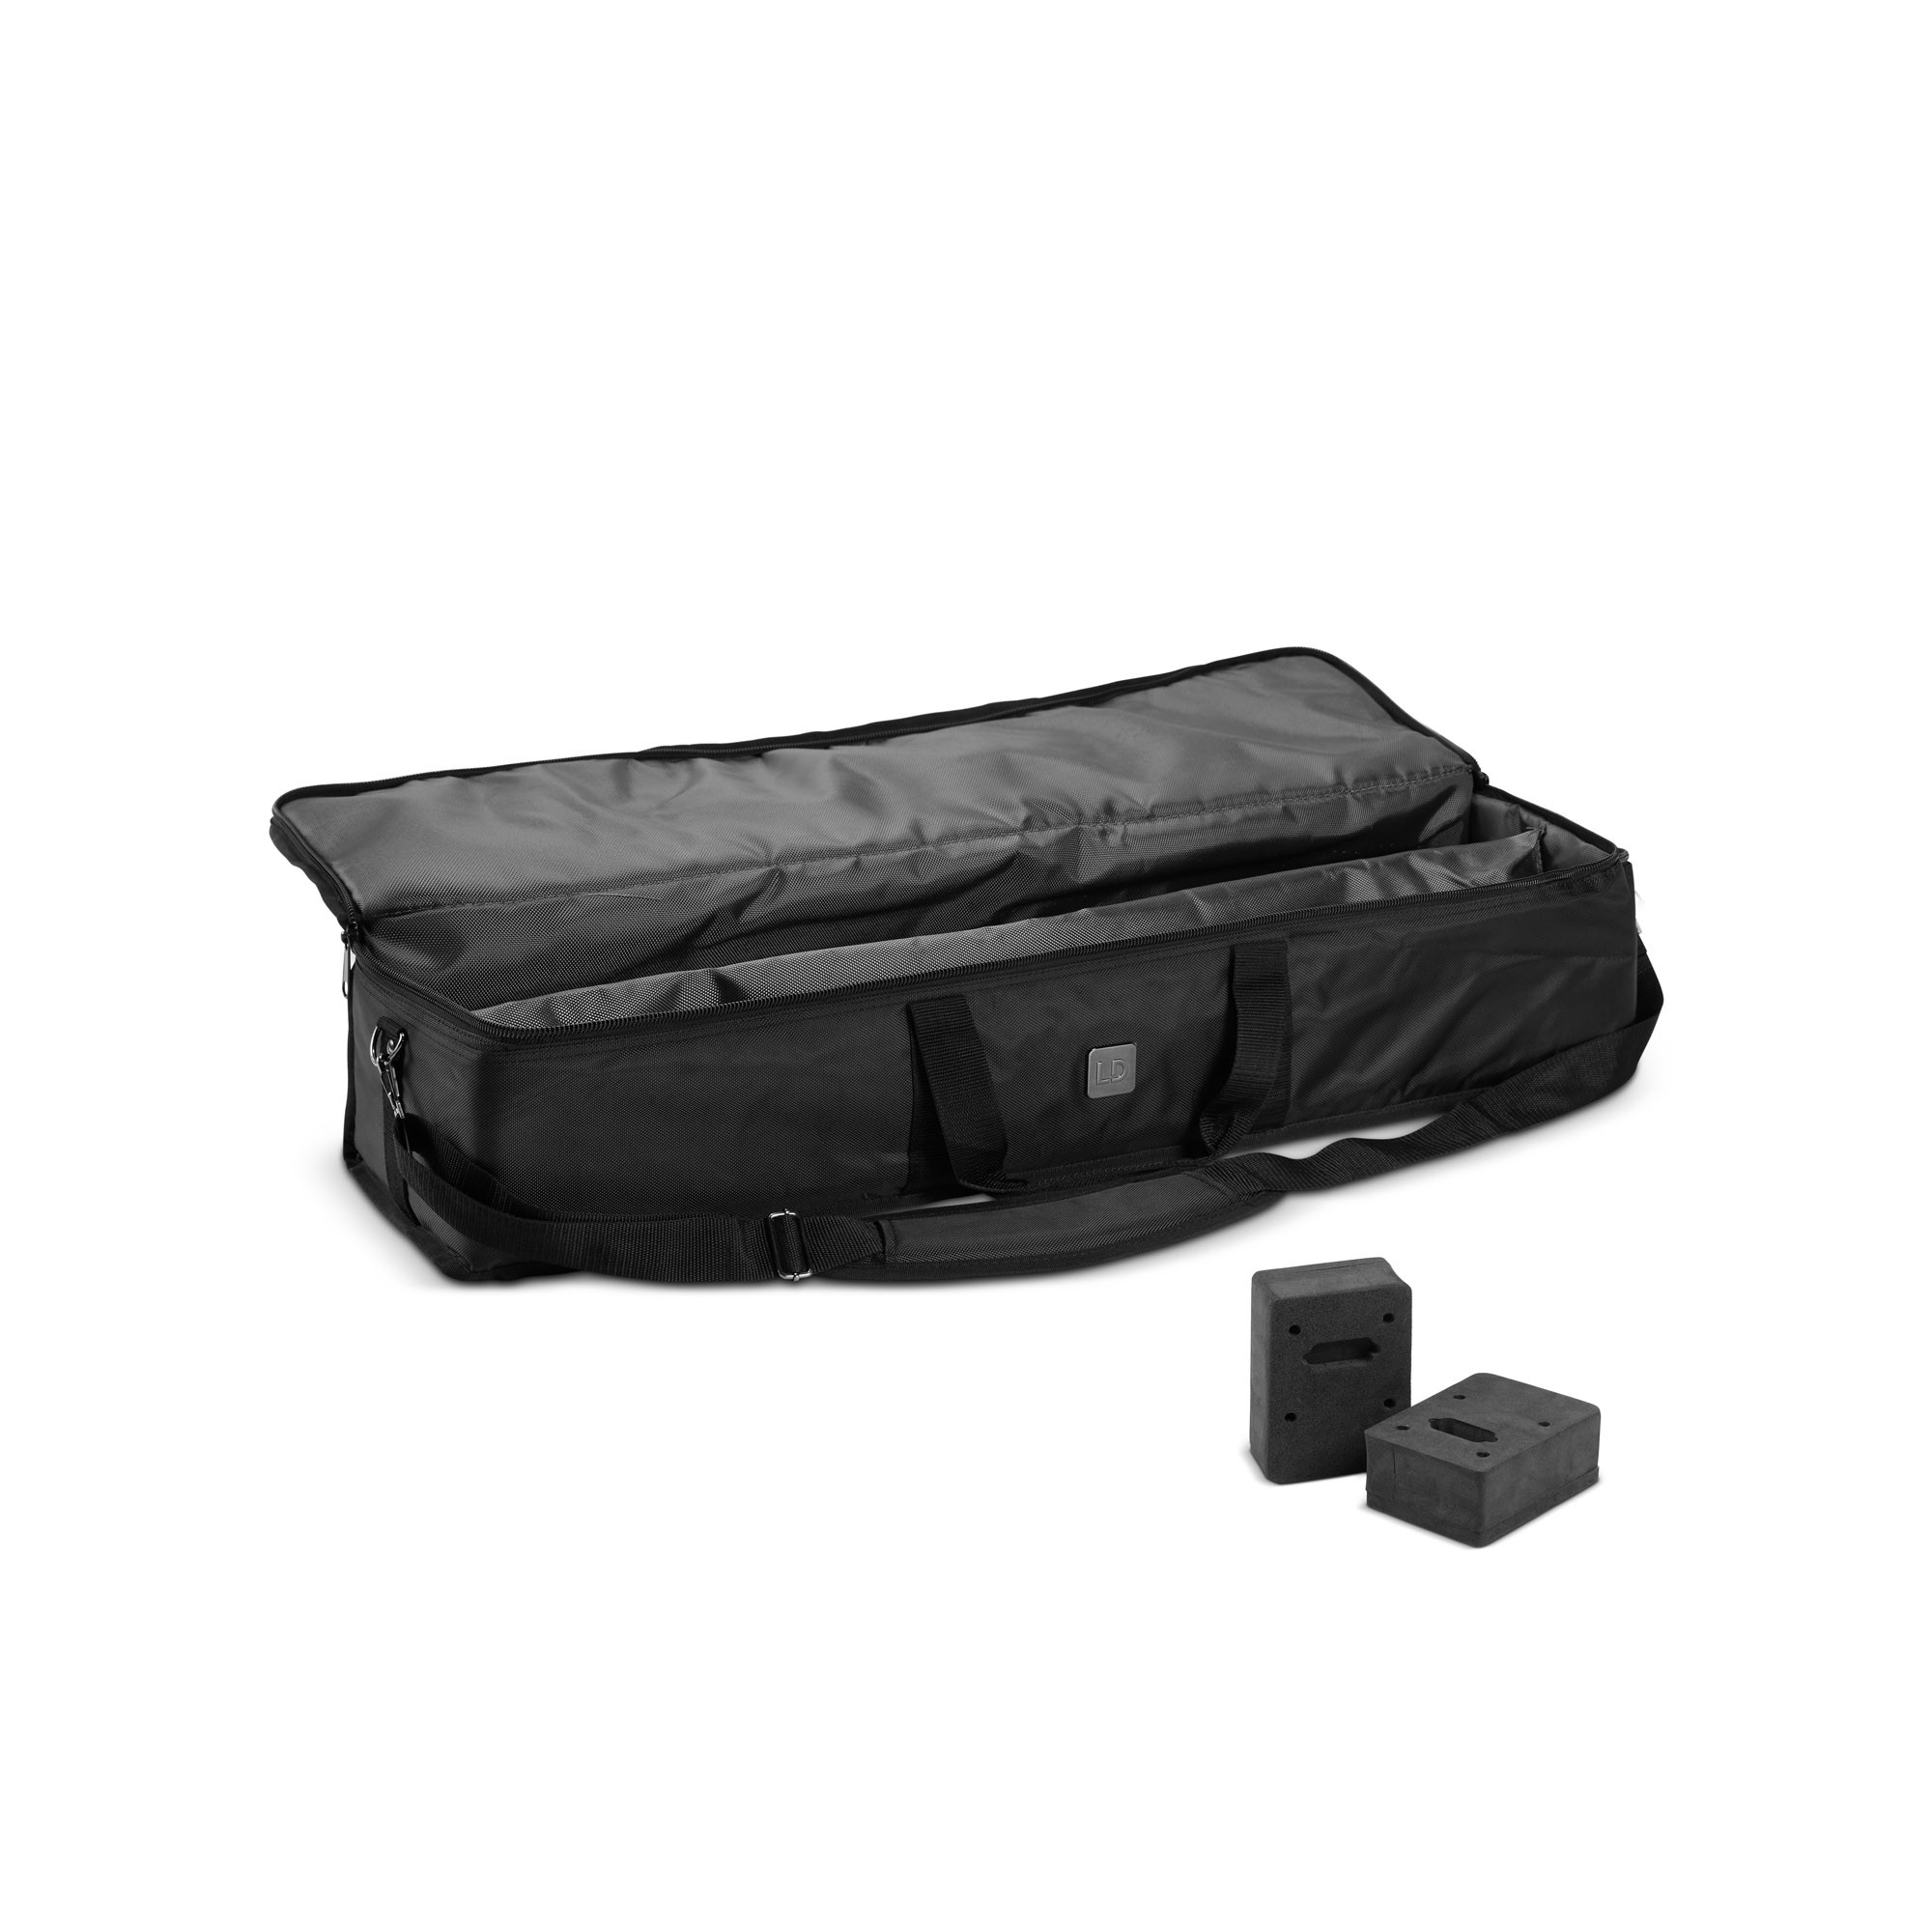 Ld Systems Maui 28 G3 Sat Bag - Bag for speakers & subwoofer - Variation 3